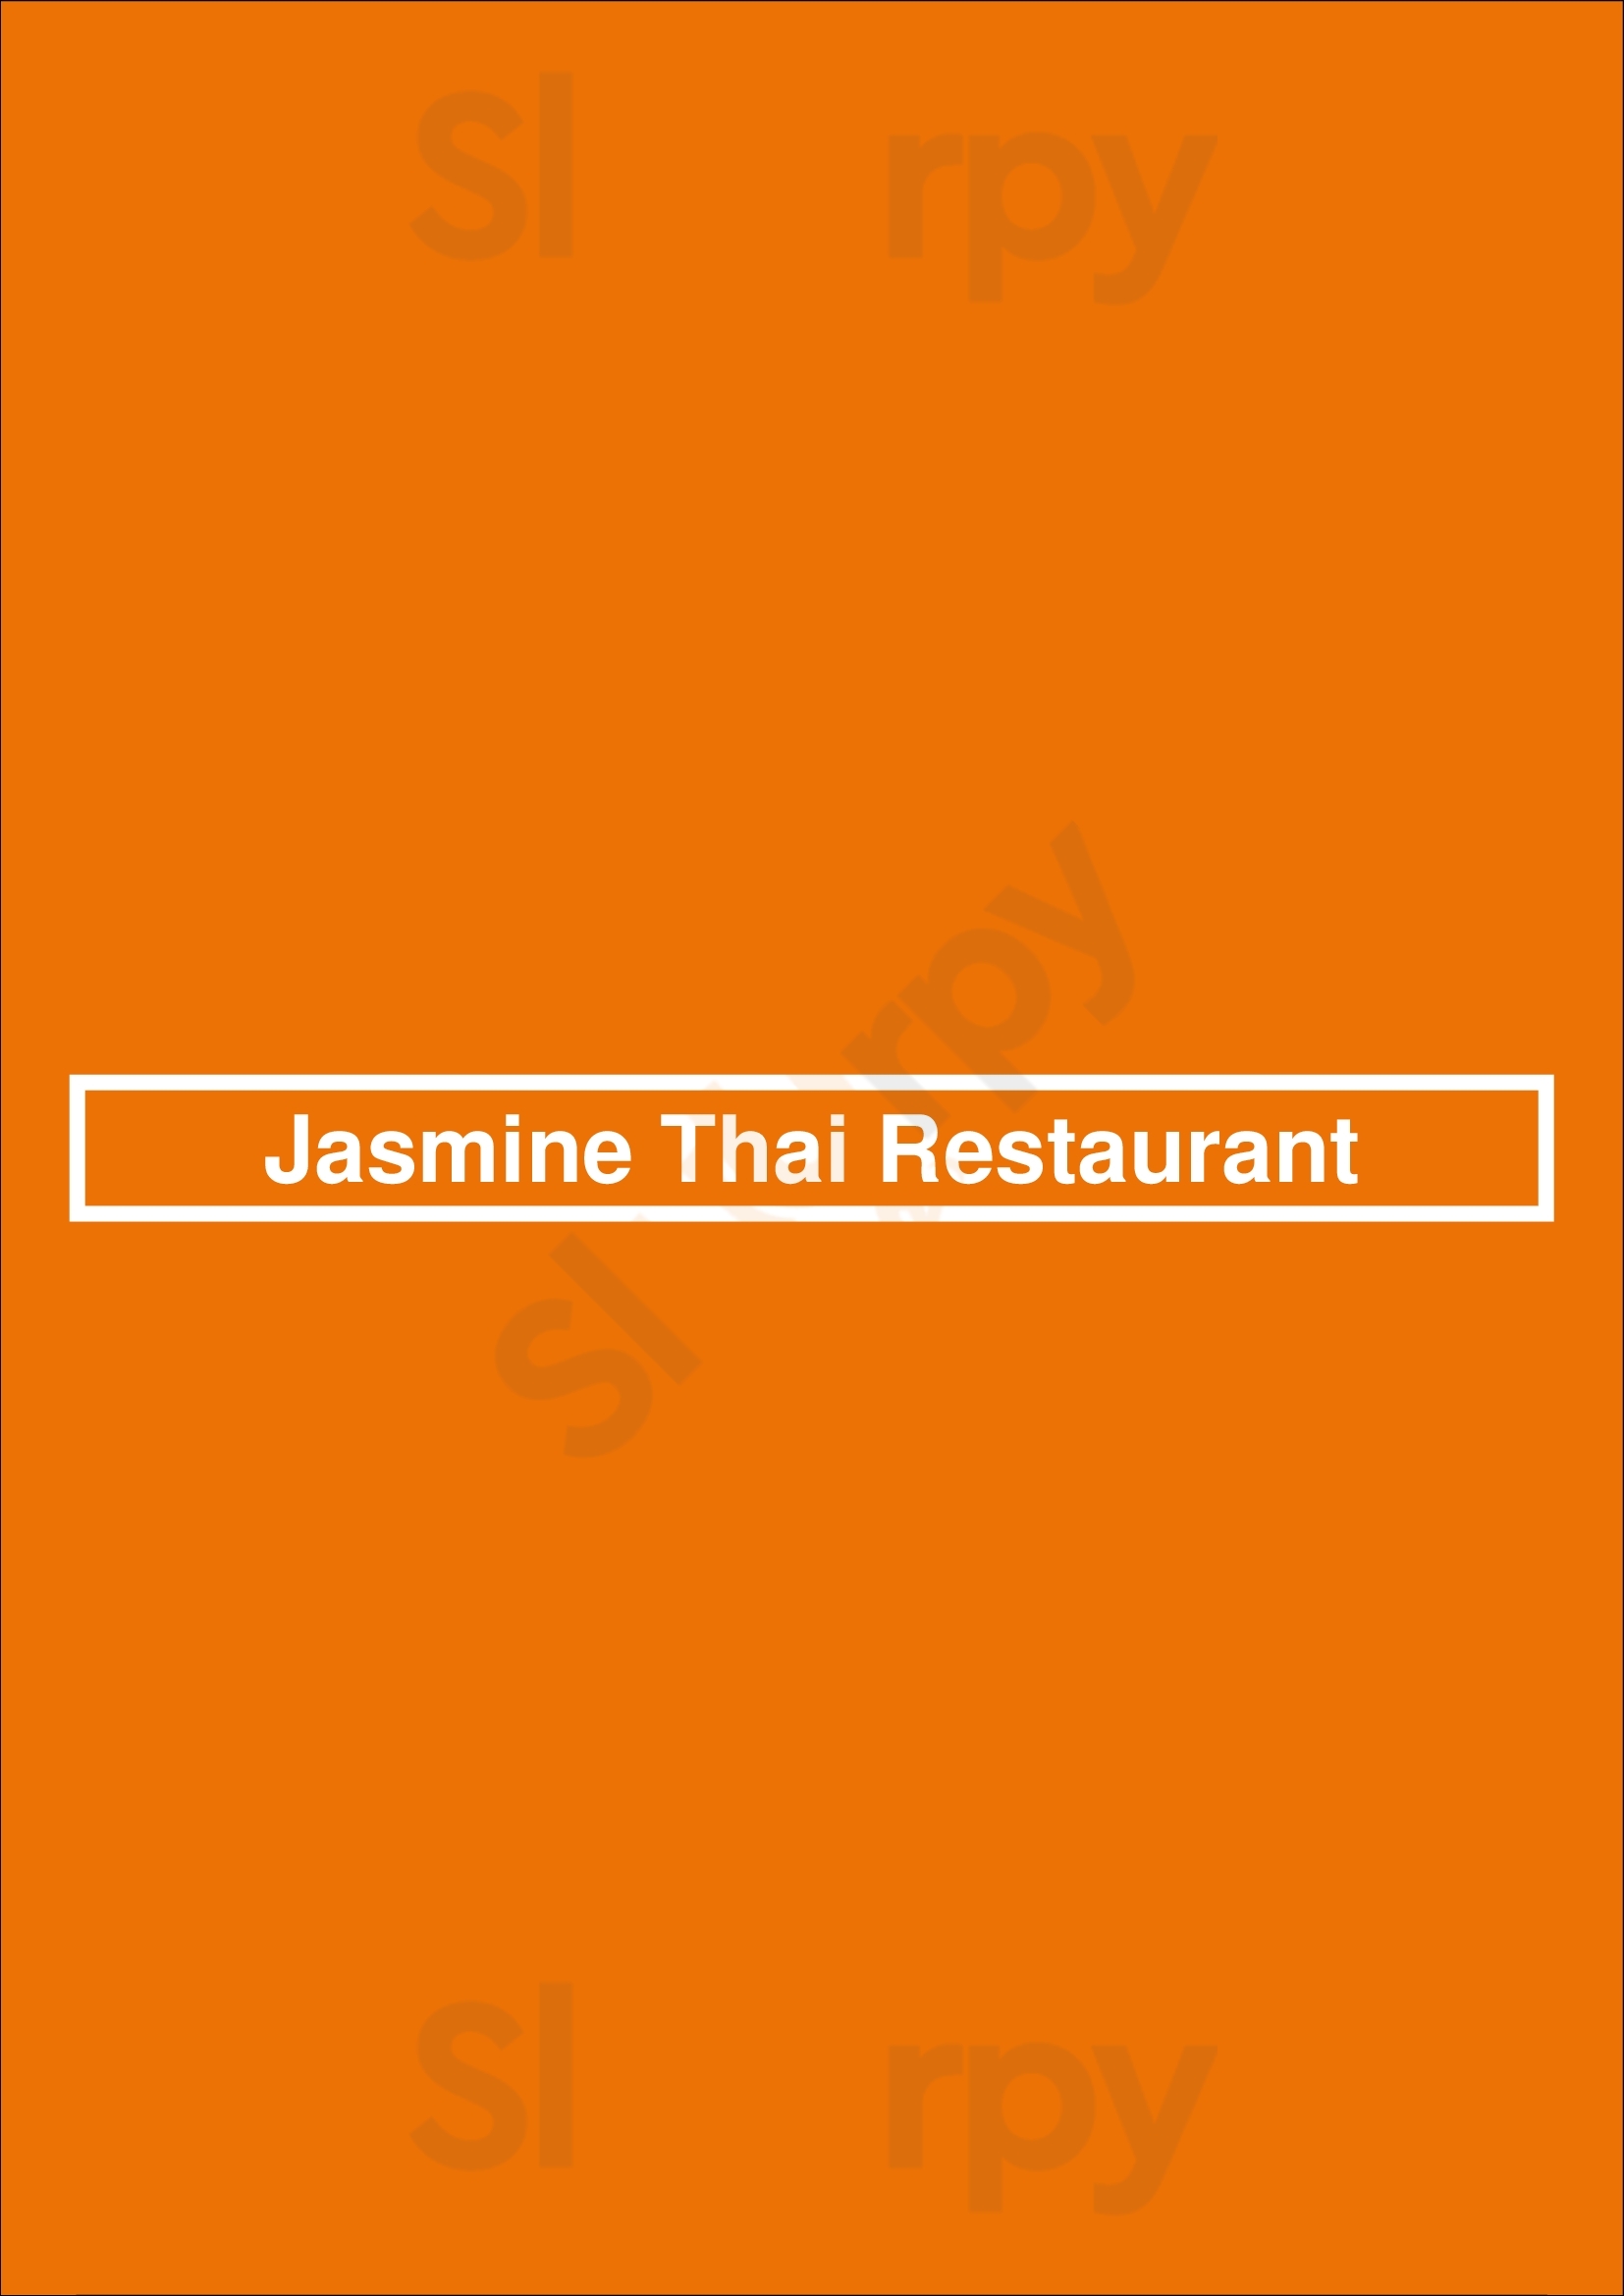 Jasmine Thai Restaurant Brandon Menu - 1